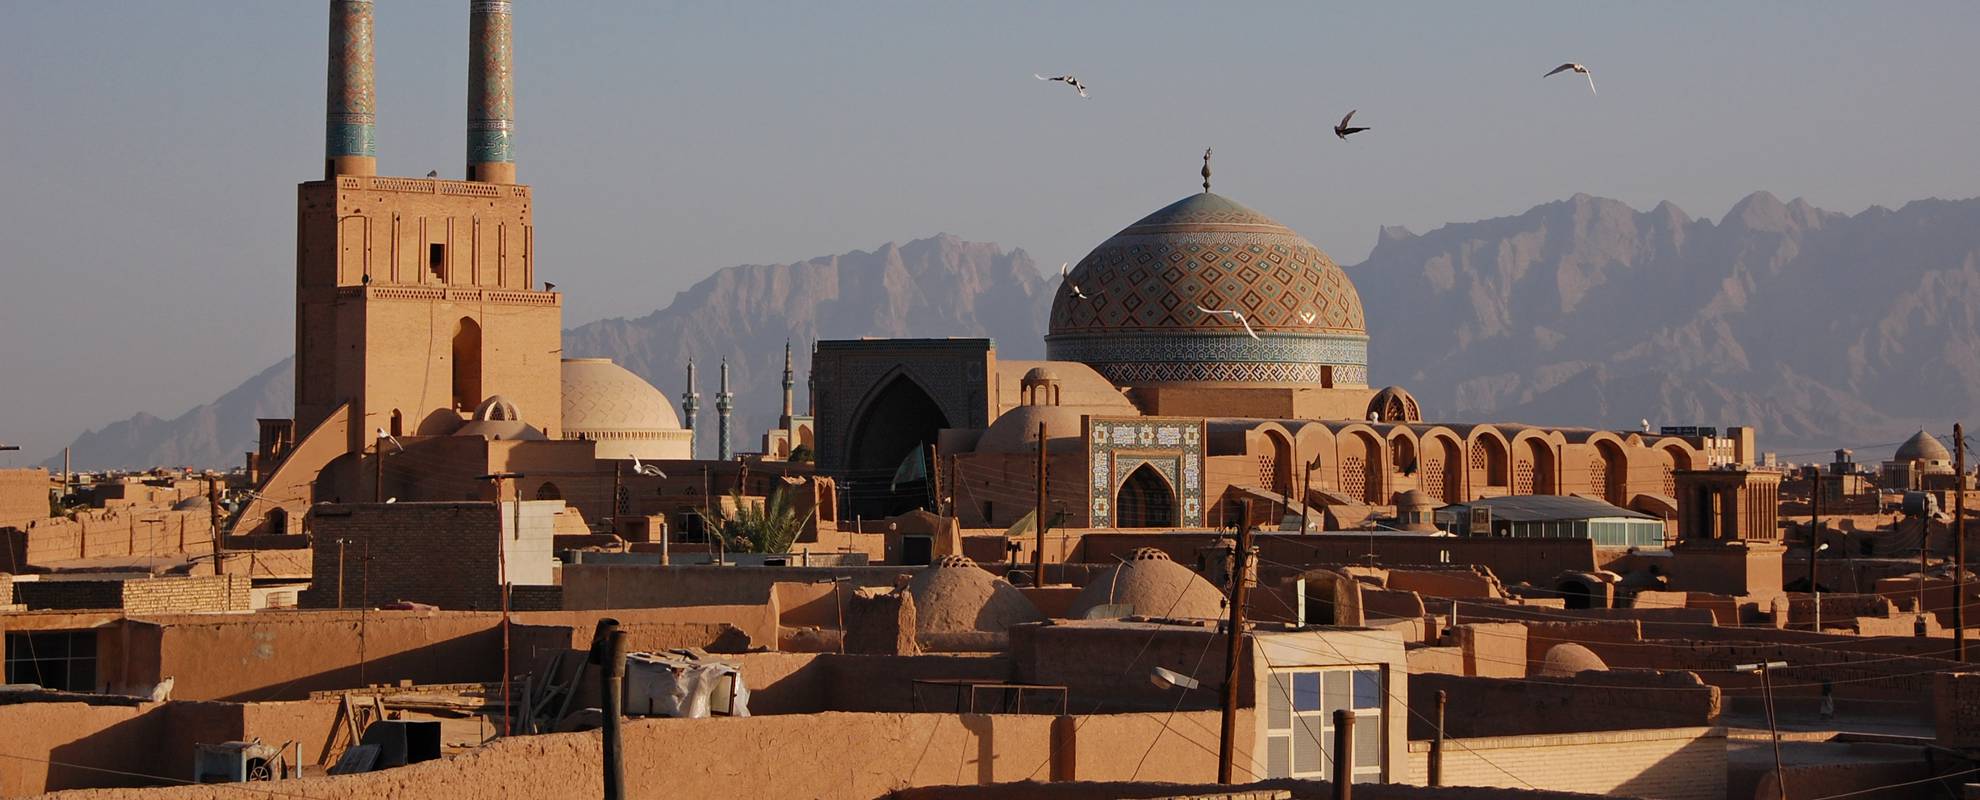 Stilla skymning i ökenstaden Yazd